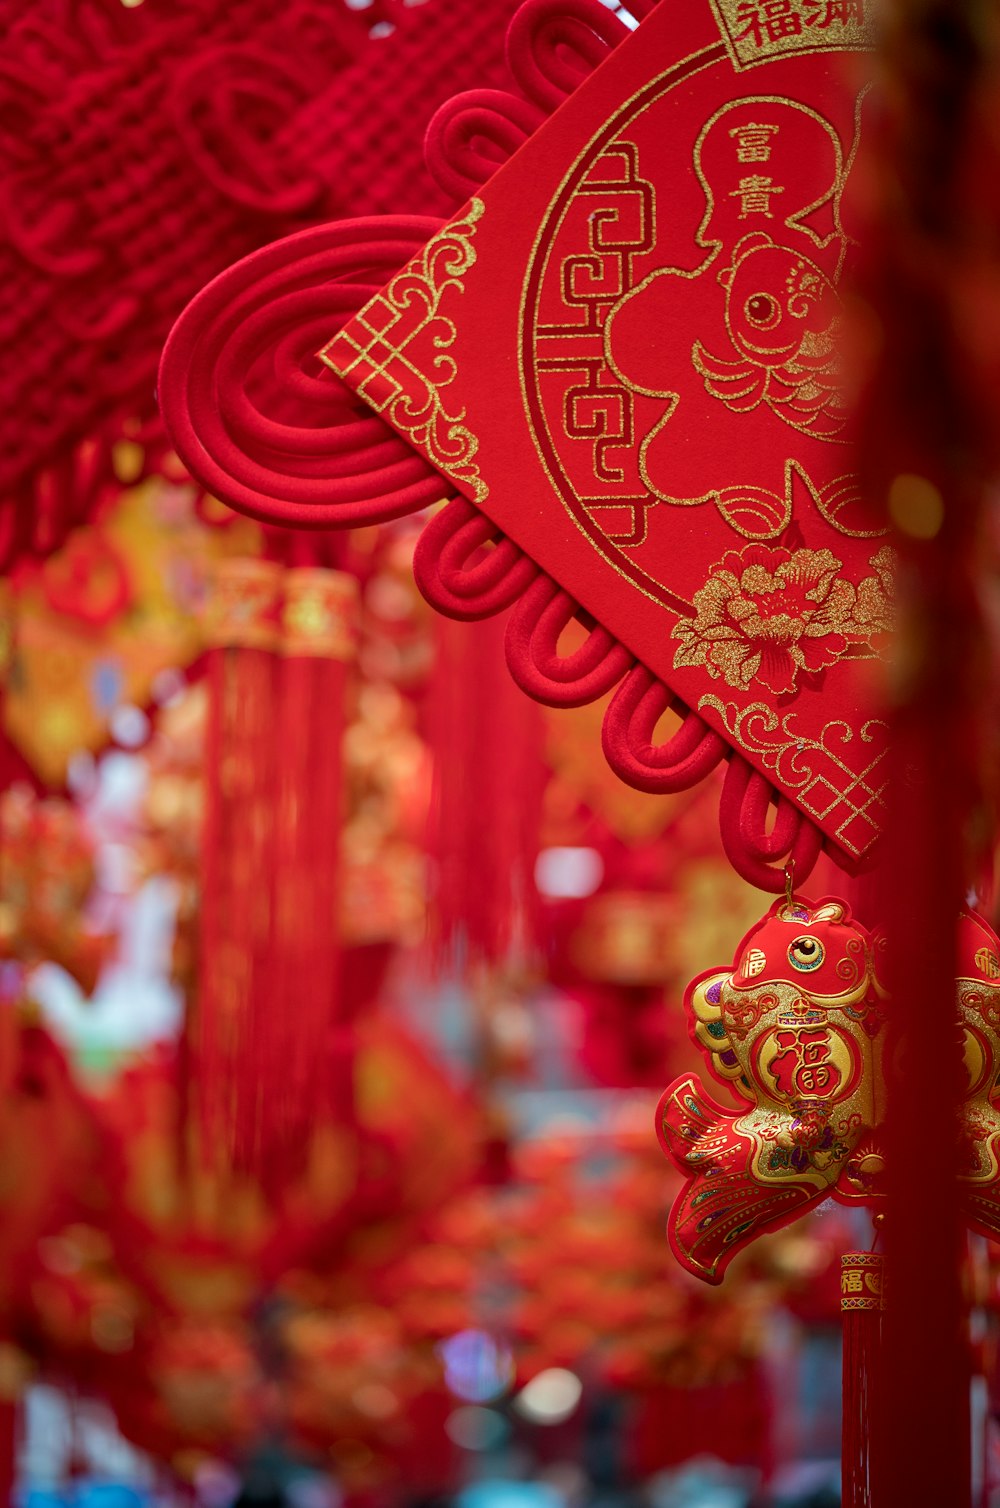 Đèn lồng Trung Hoa là một trong những biểu tượng đặc trưng của văn hóa Trung Hoa. Được sử dụng trong các lễ hội và trang trí đường phố, đèn lồng Trung Hoa mang đến một màu sắc rực rỡ và tuyệt vời cho không gian. Hãy xem các hình ảnh đèn lồng Trung Hoa để cảm nhận được sức hút của chúng đến từng chi tiết.